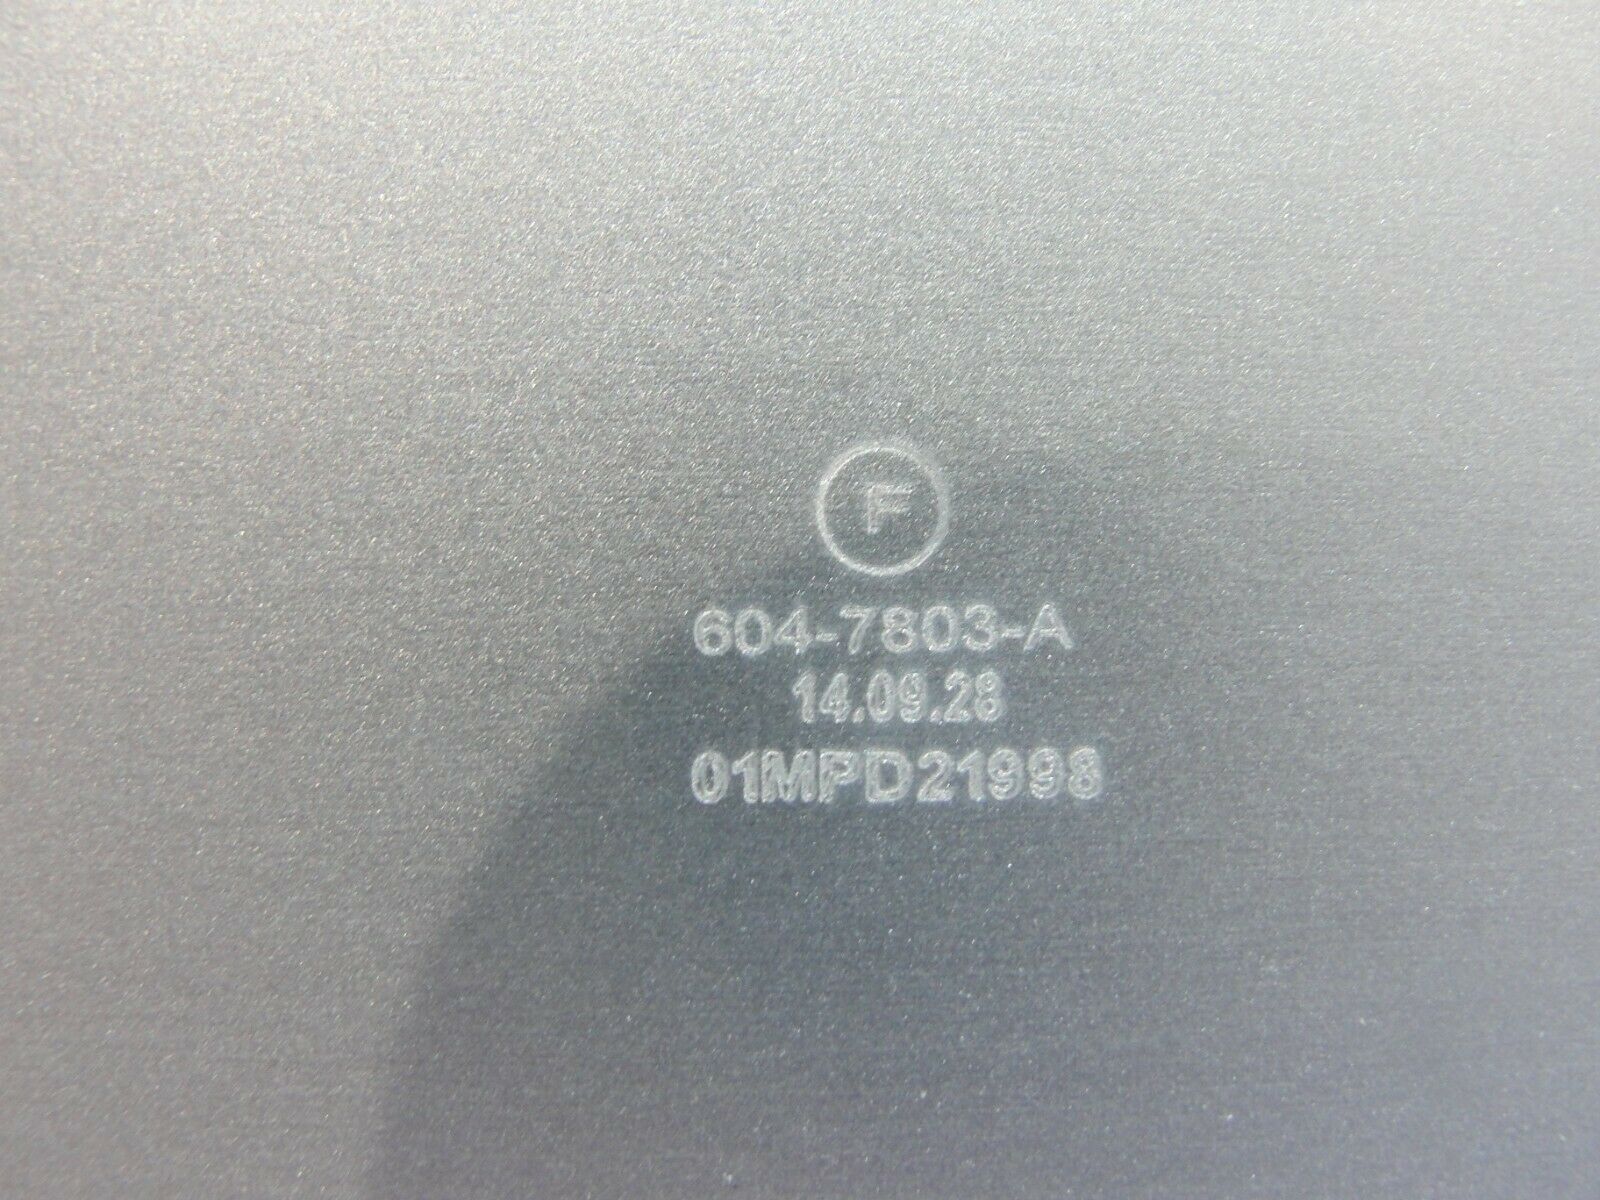 MacBook Air A1466 MD760LL/B Early 2014 13